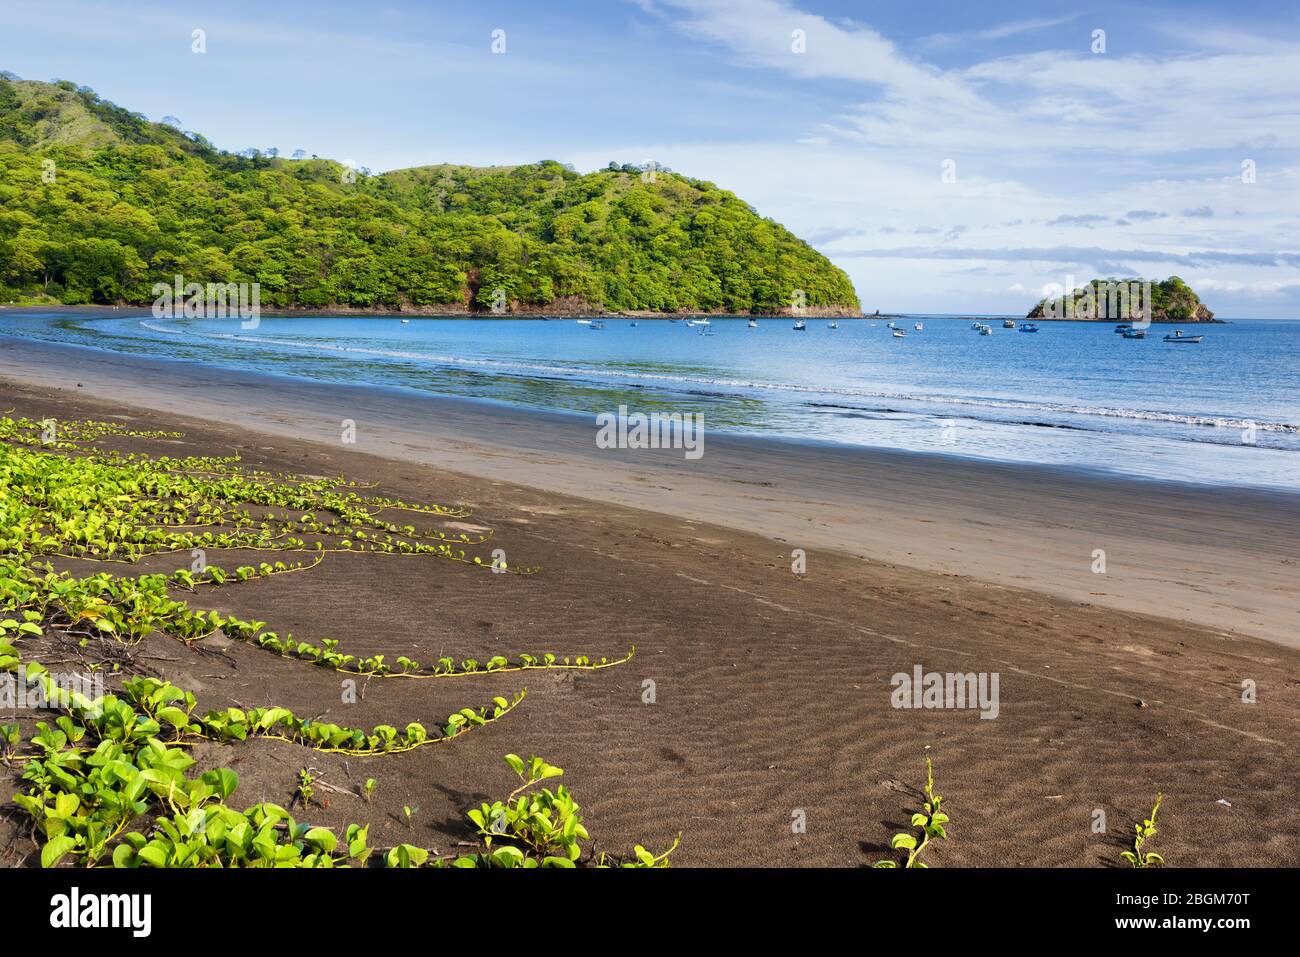 Vue sur une plage volcanique sur la côte du pacifique de l'Amérique centrale. Playas del Coco, Costa Rica. Province de Guanacaste. Banque D'Images